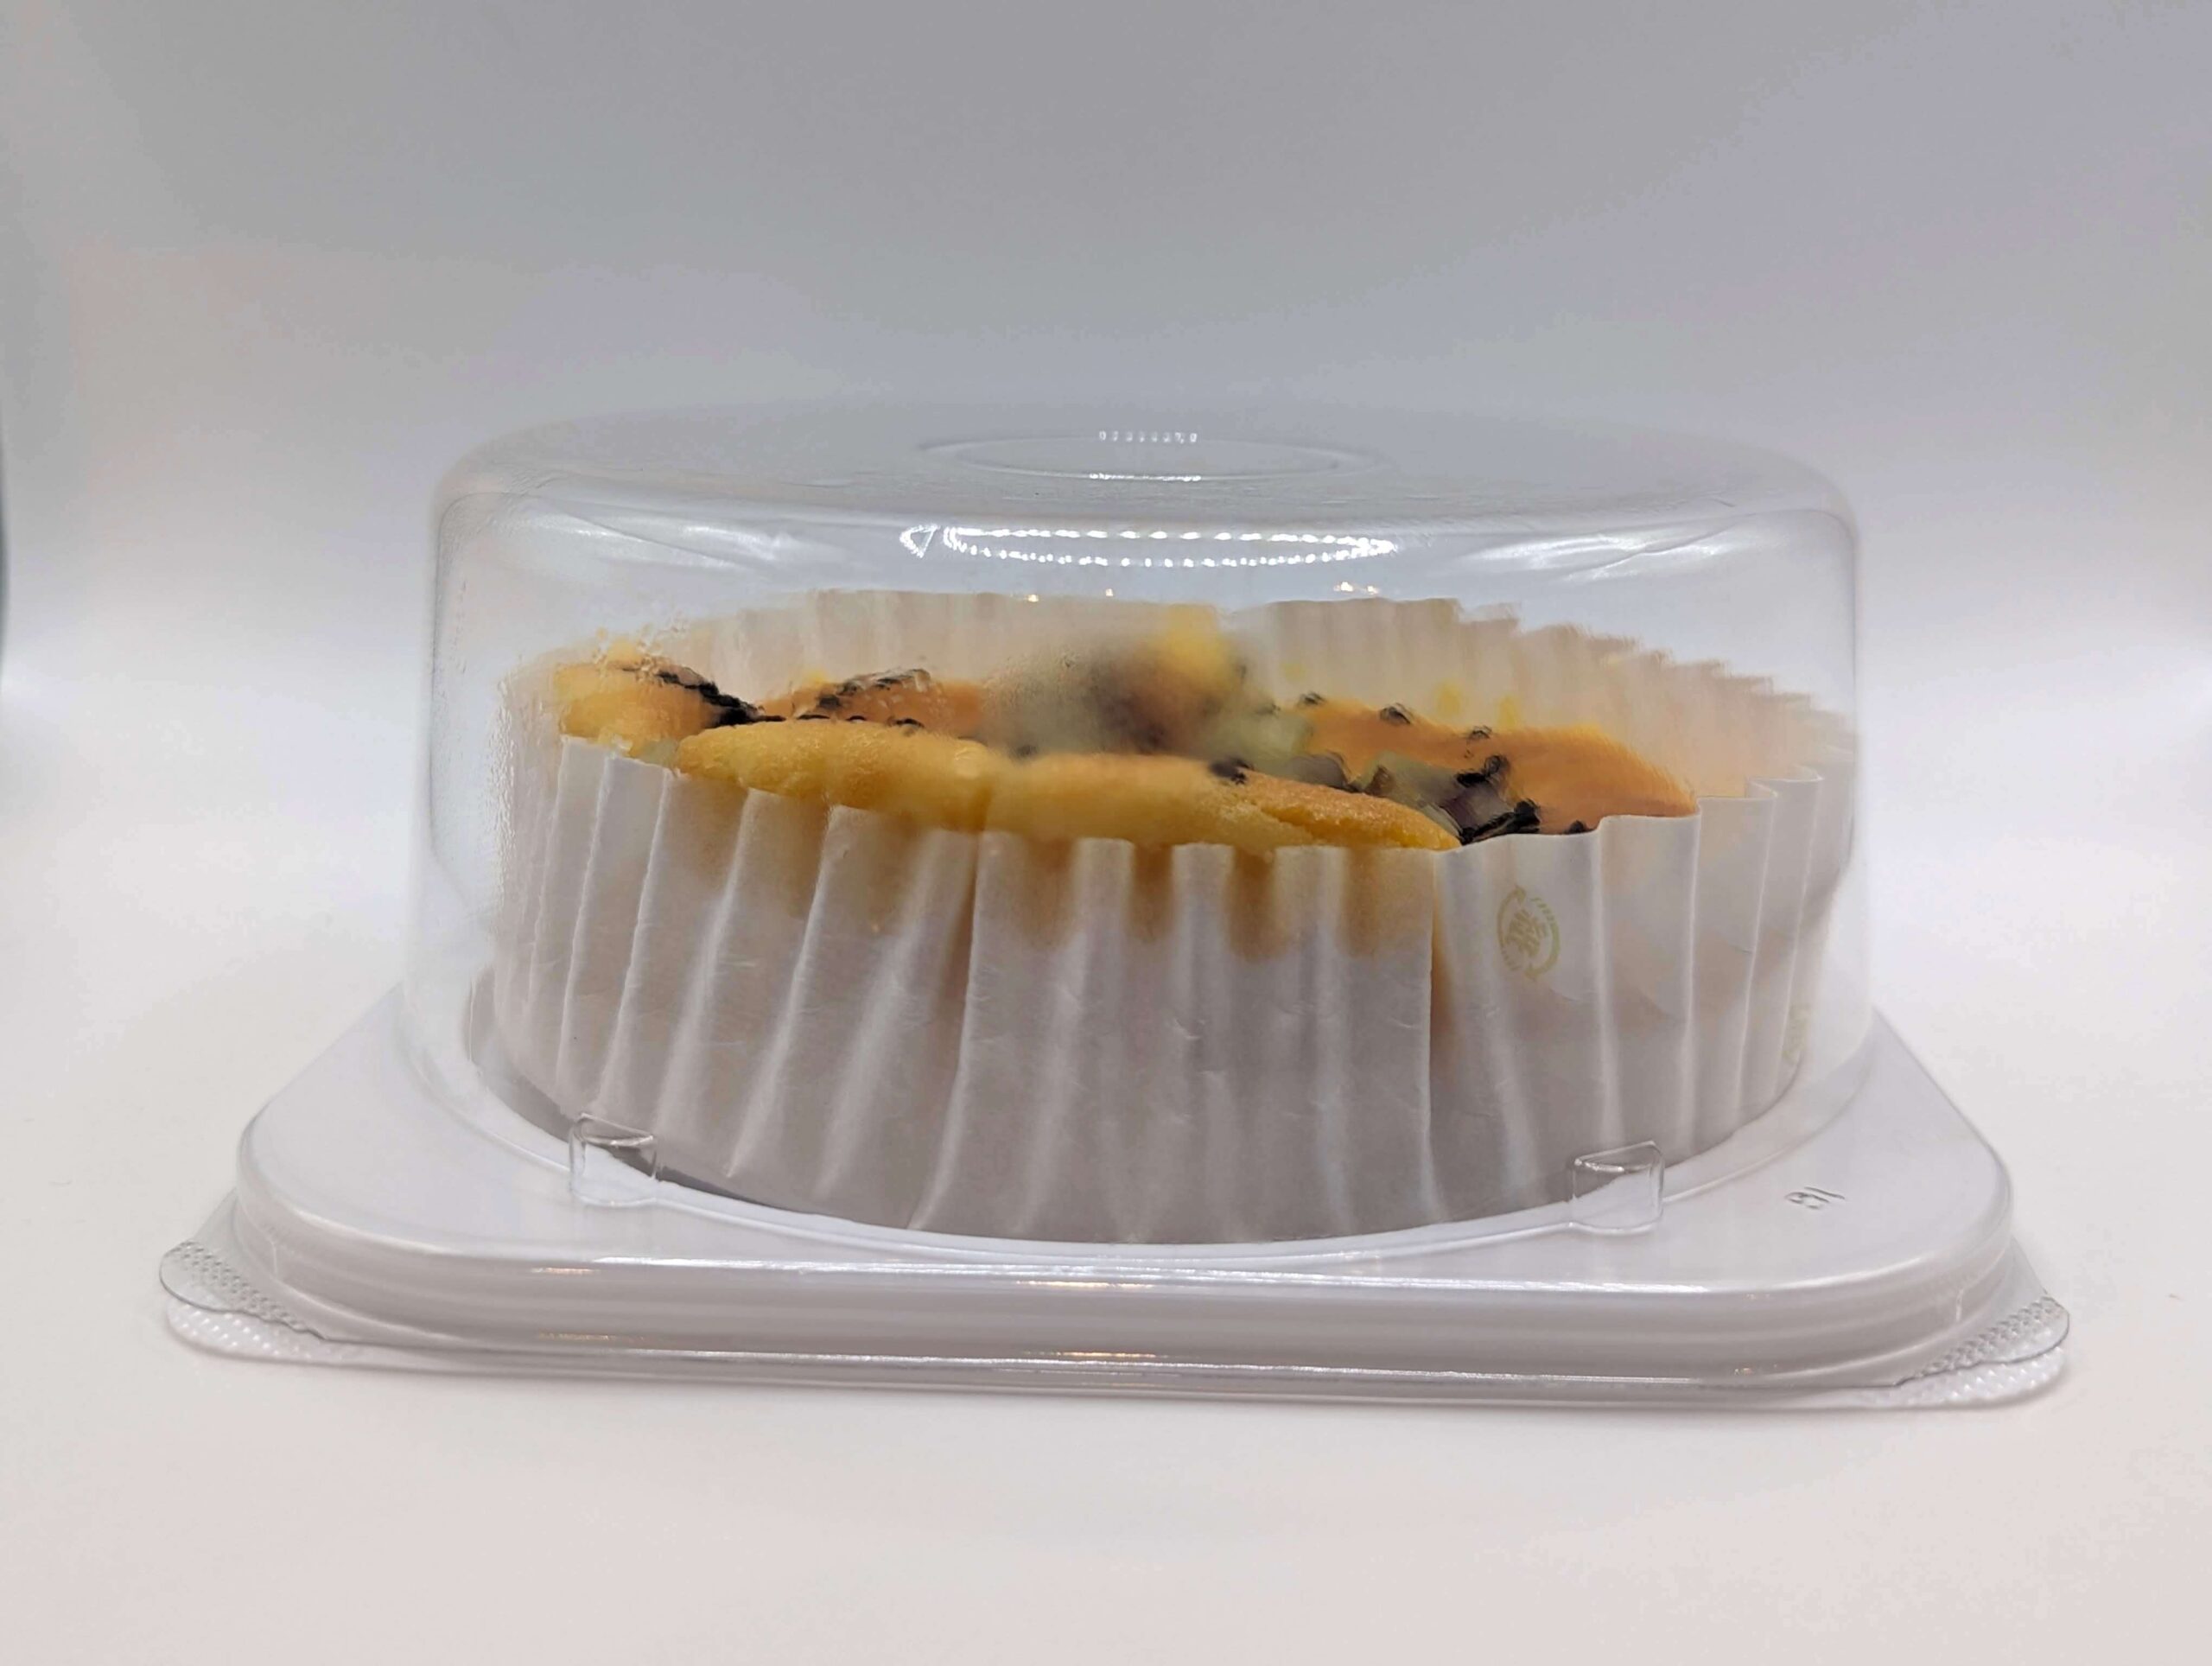 成城石井の「紅はるかの芋チーズケーキ」の写真 (11)